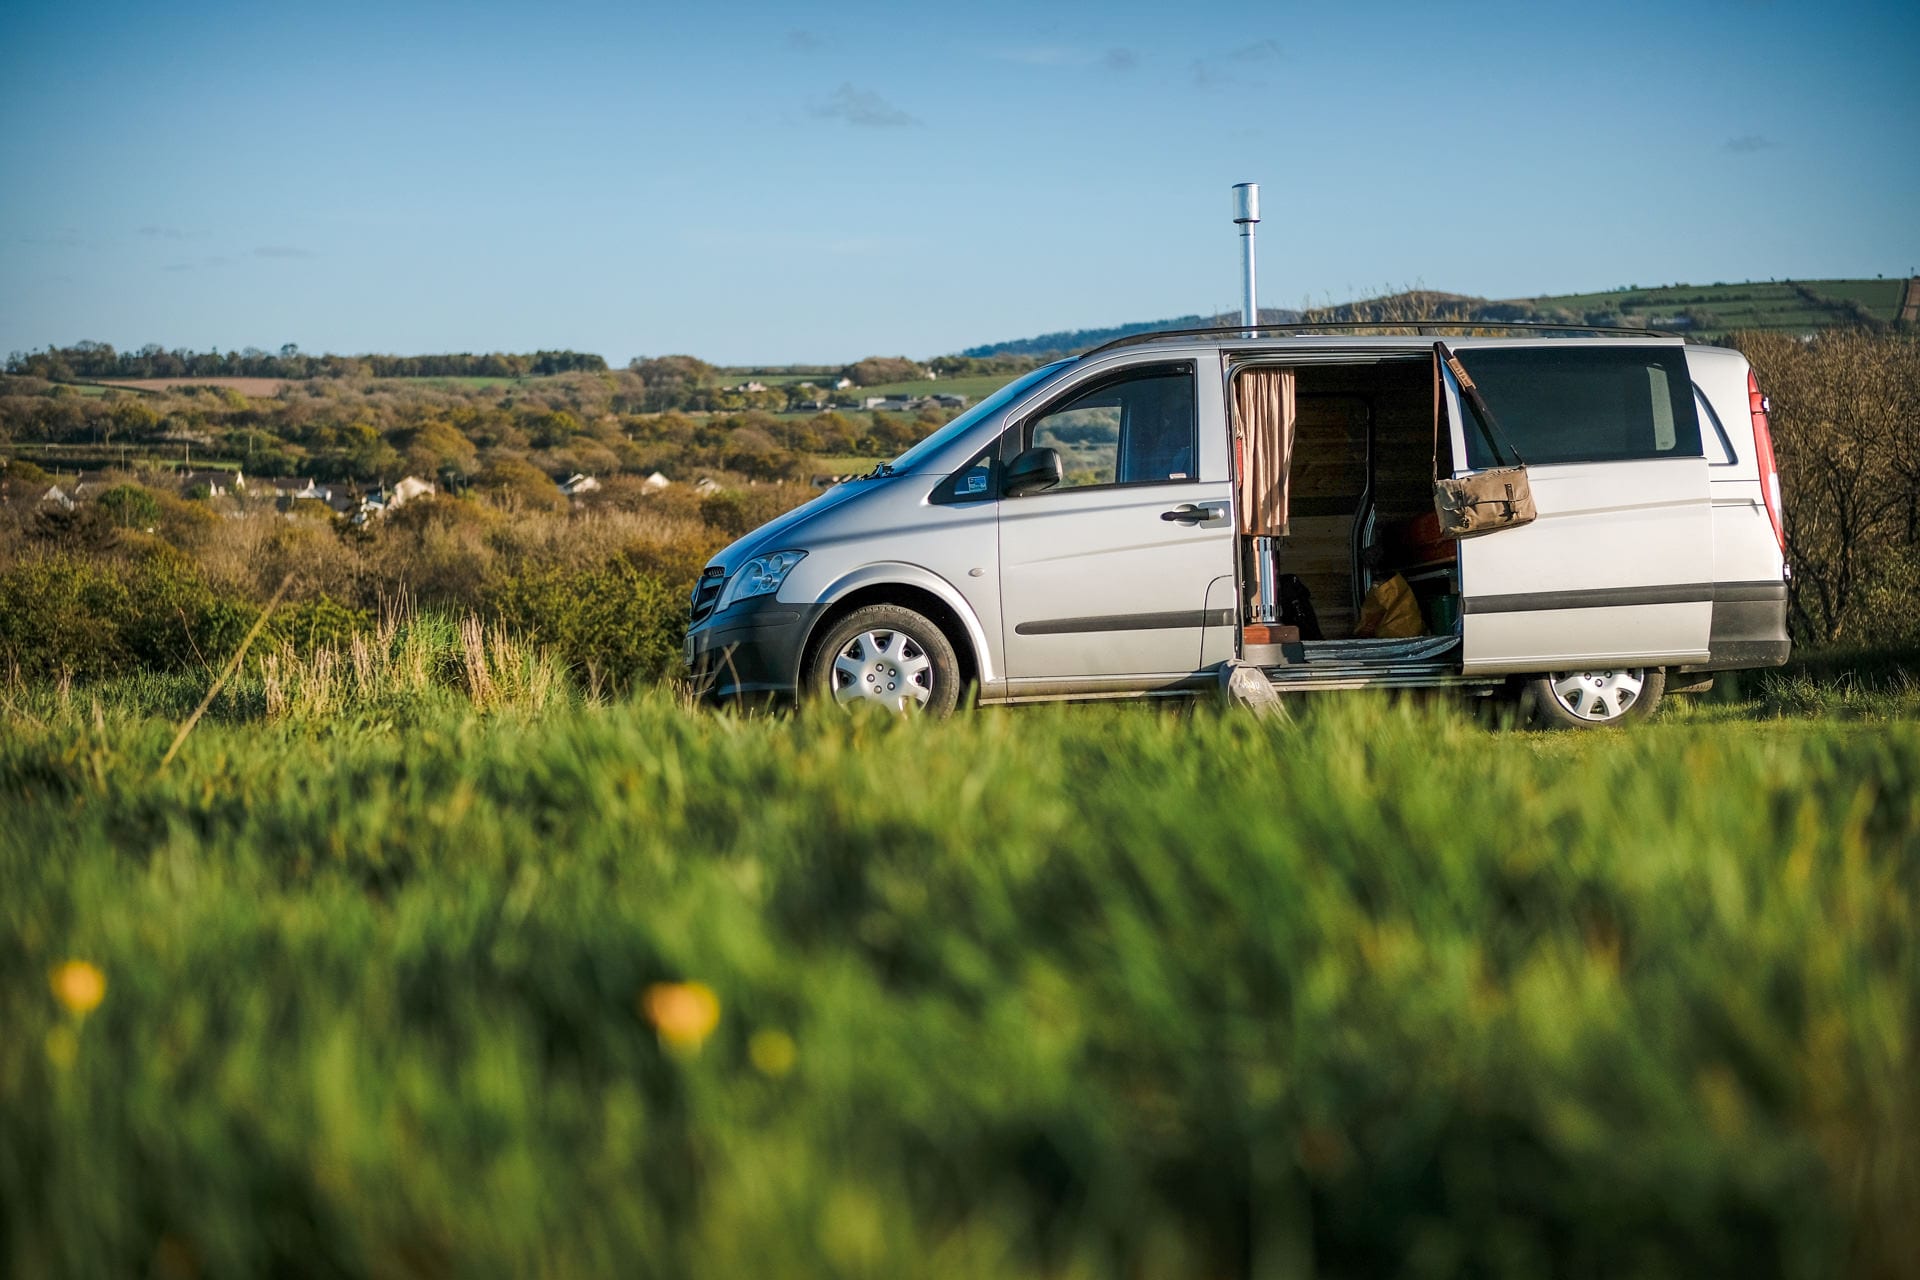 MercedesVeto campervan in Wales